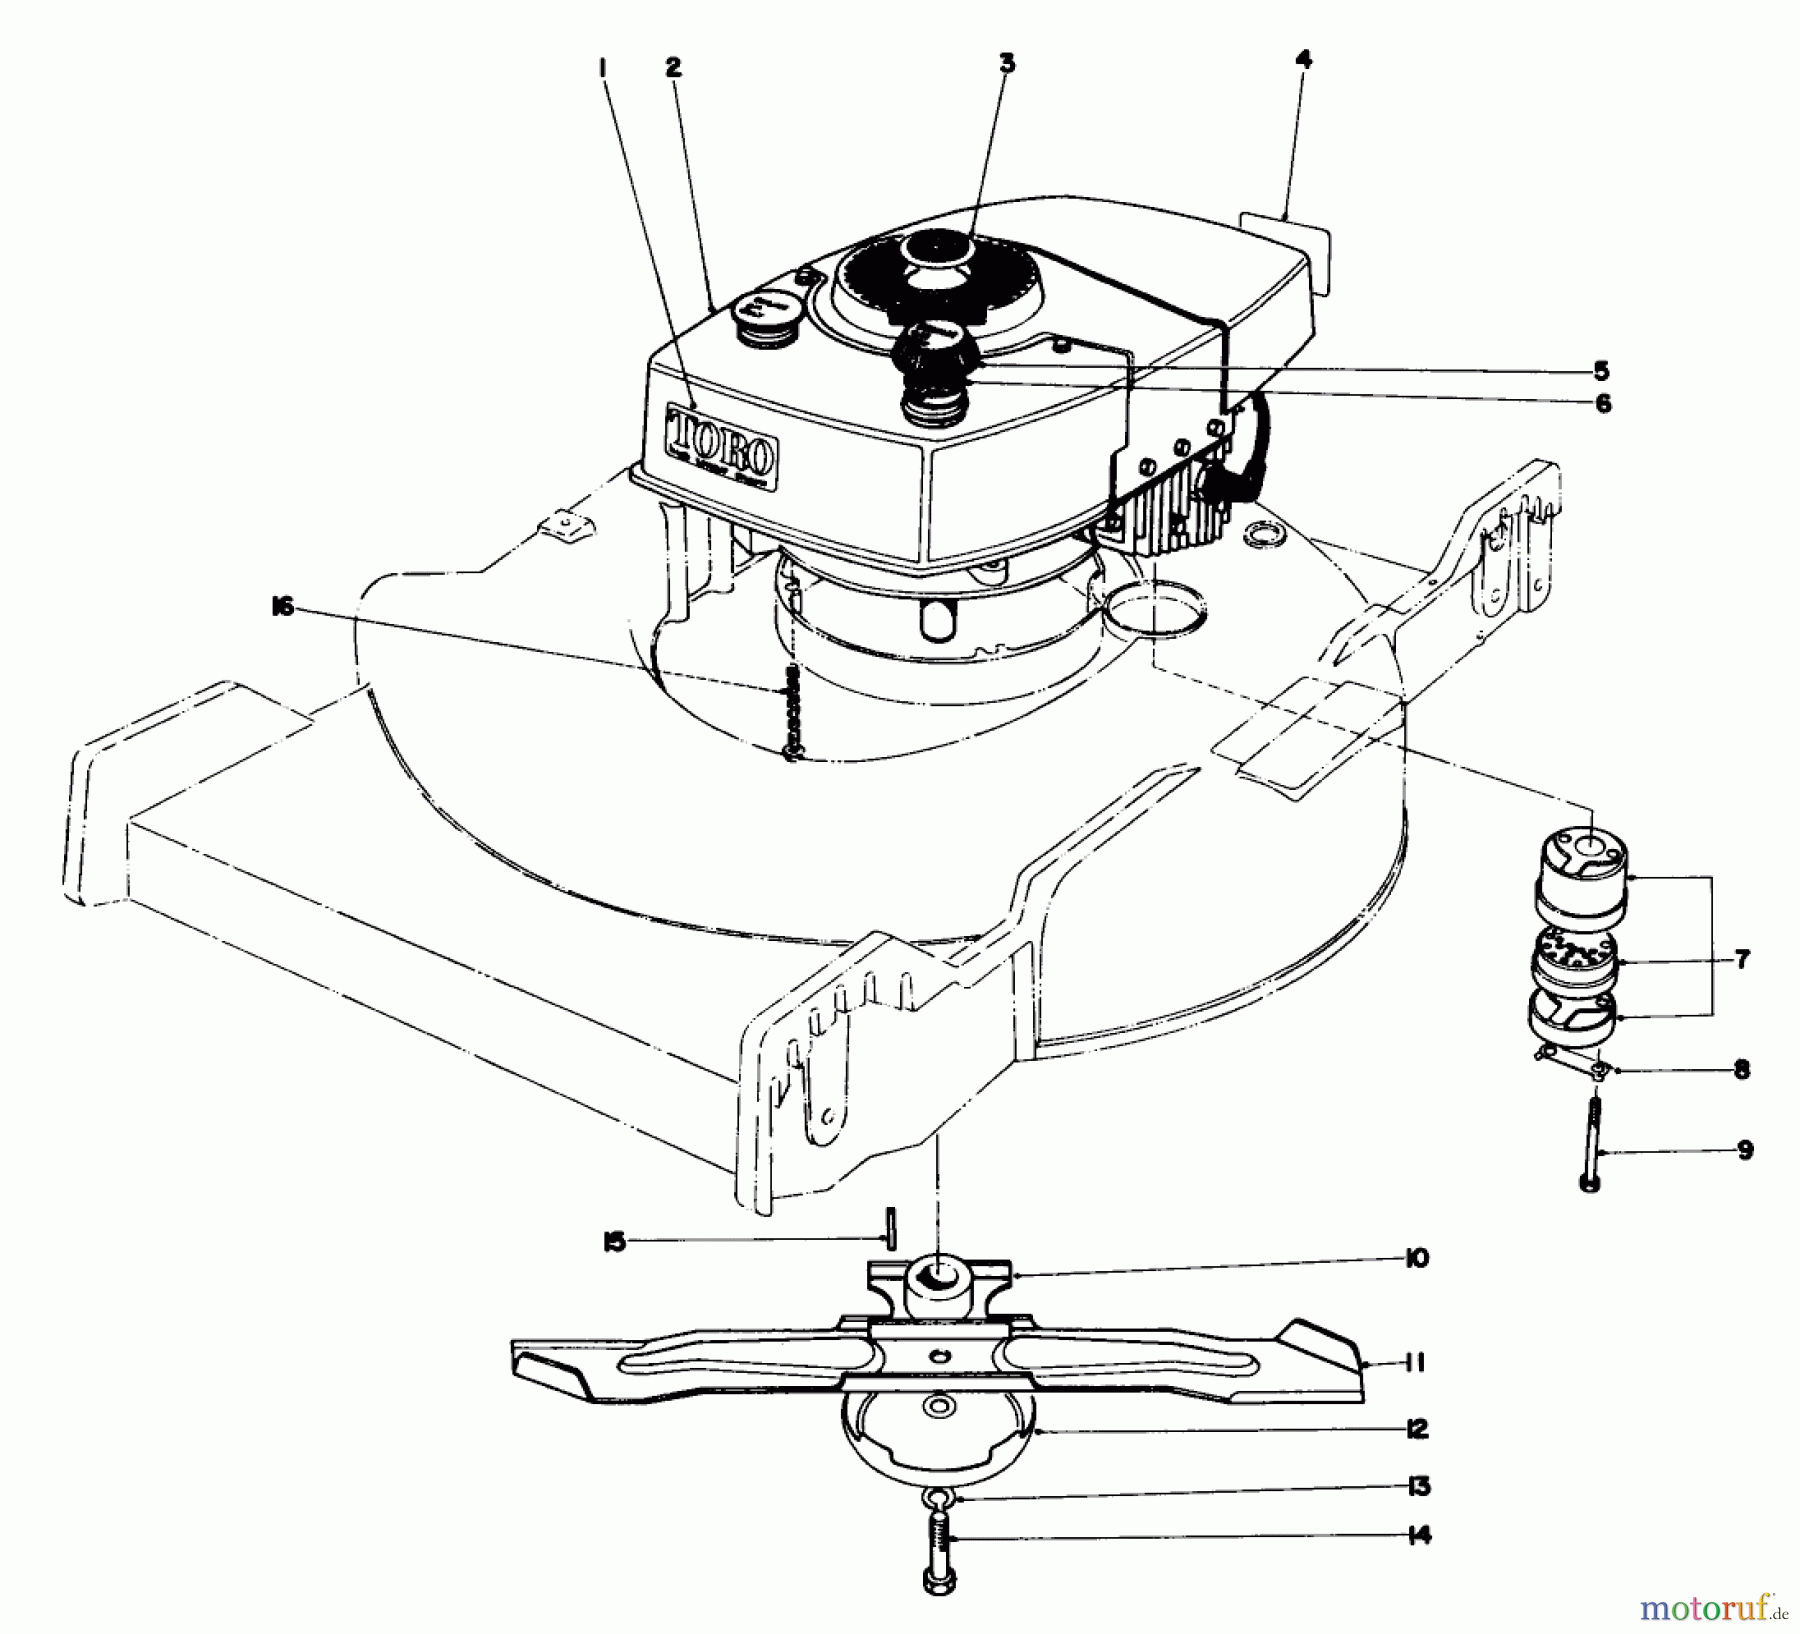  Toro Neu Mowers, Walk-Behind Seite 1 20440 - Toro Lawnmower, 1974 (4000001-4999999) ENGINE ASSEMBLY MODEL NO. 20440